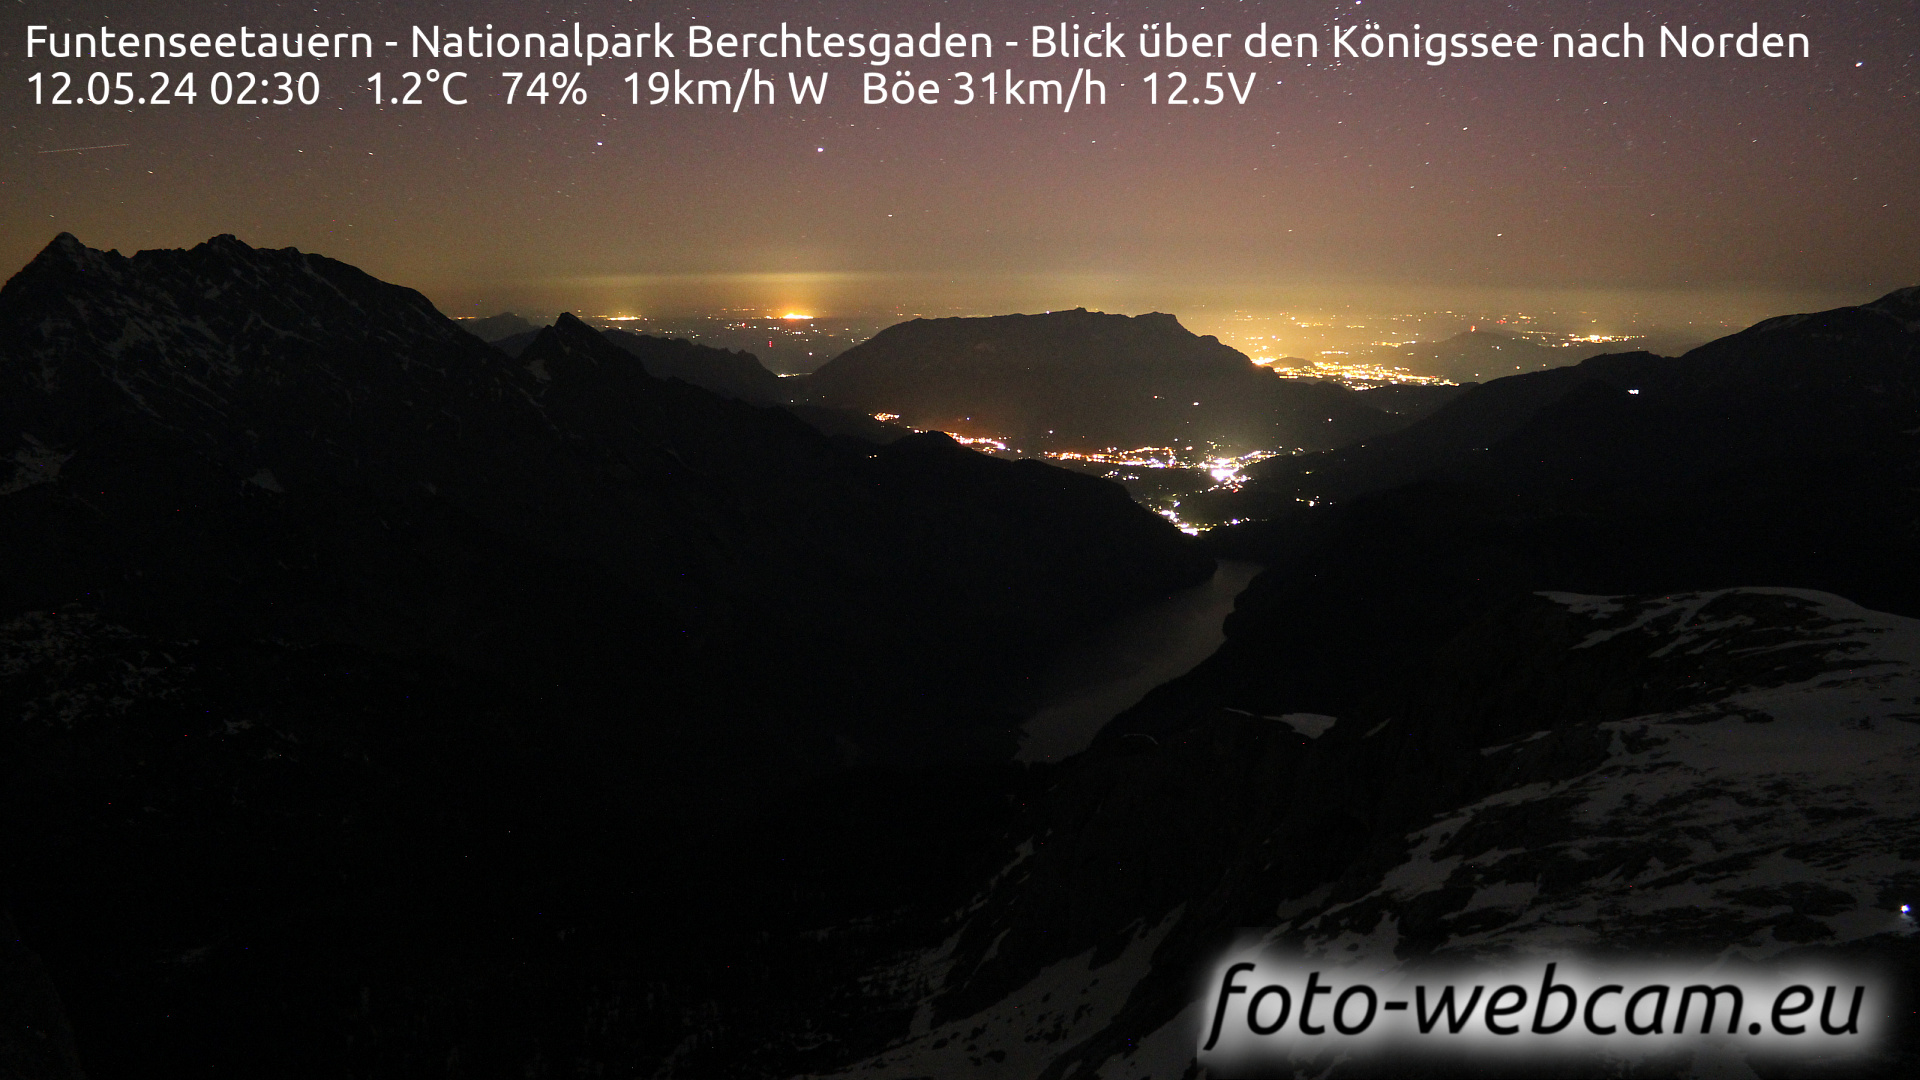 Berchtesgaden Gio. 02:48